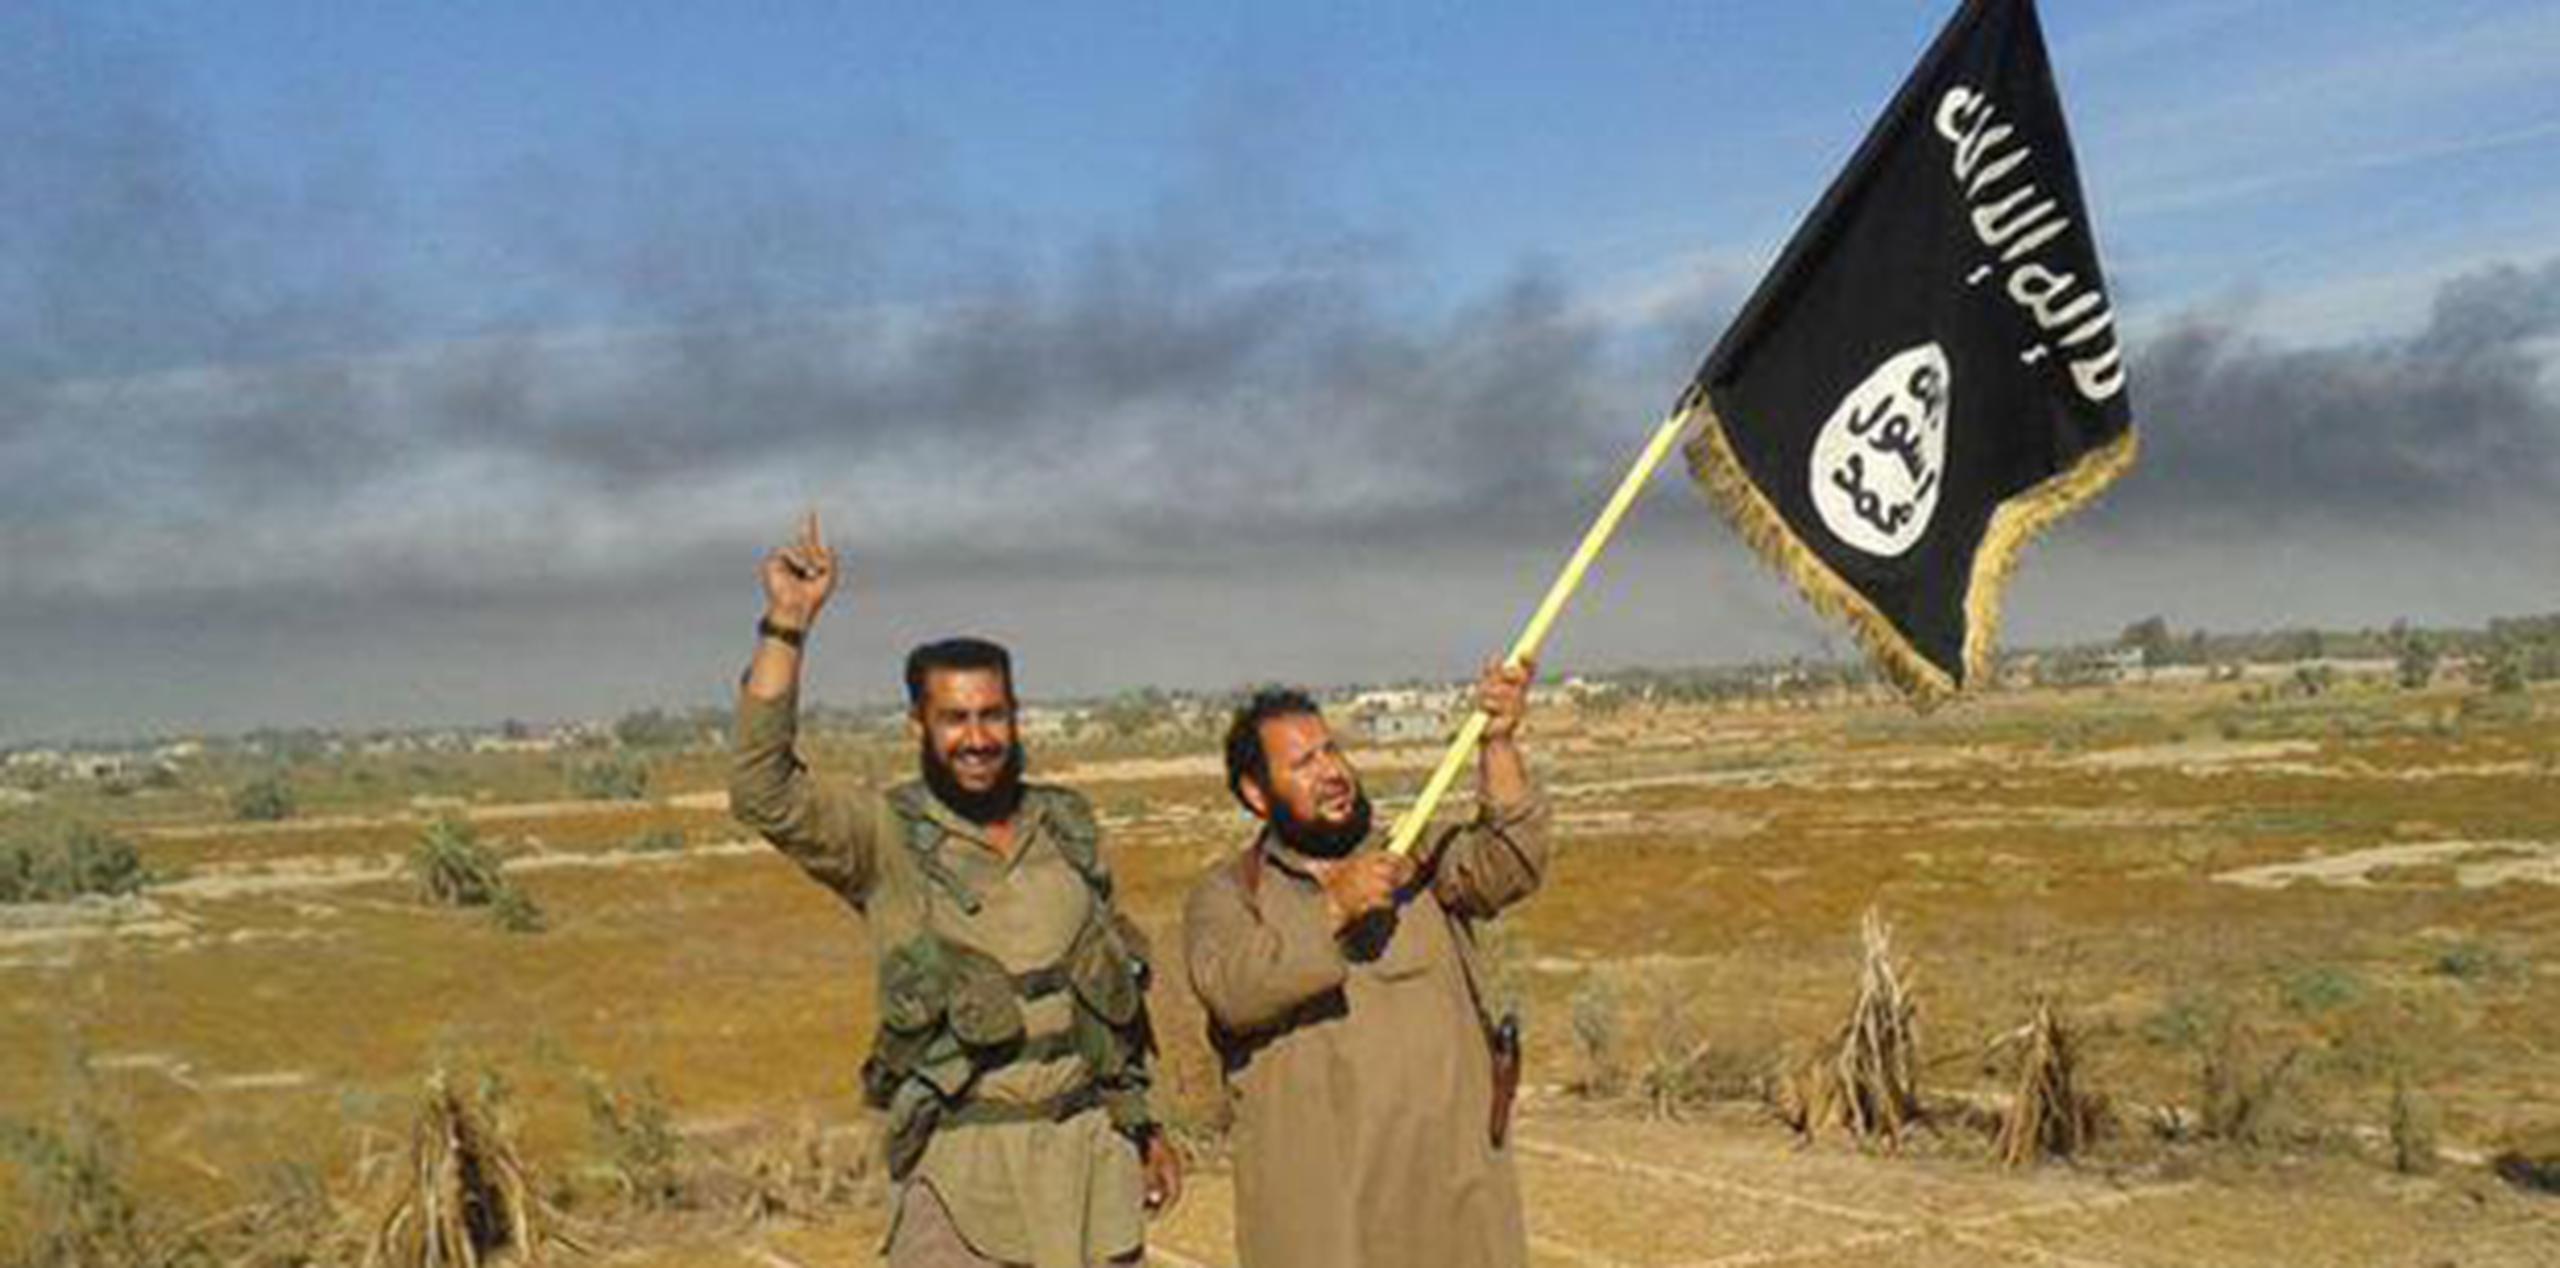 Miembros de Estado Islámico ondean la bandera de la organización terrorista en Siria. (AP)